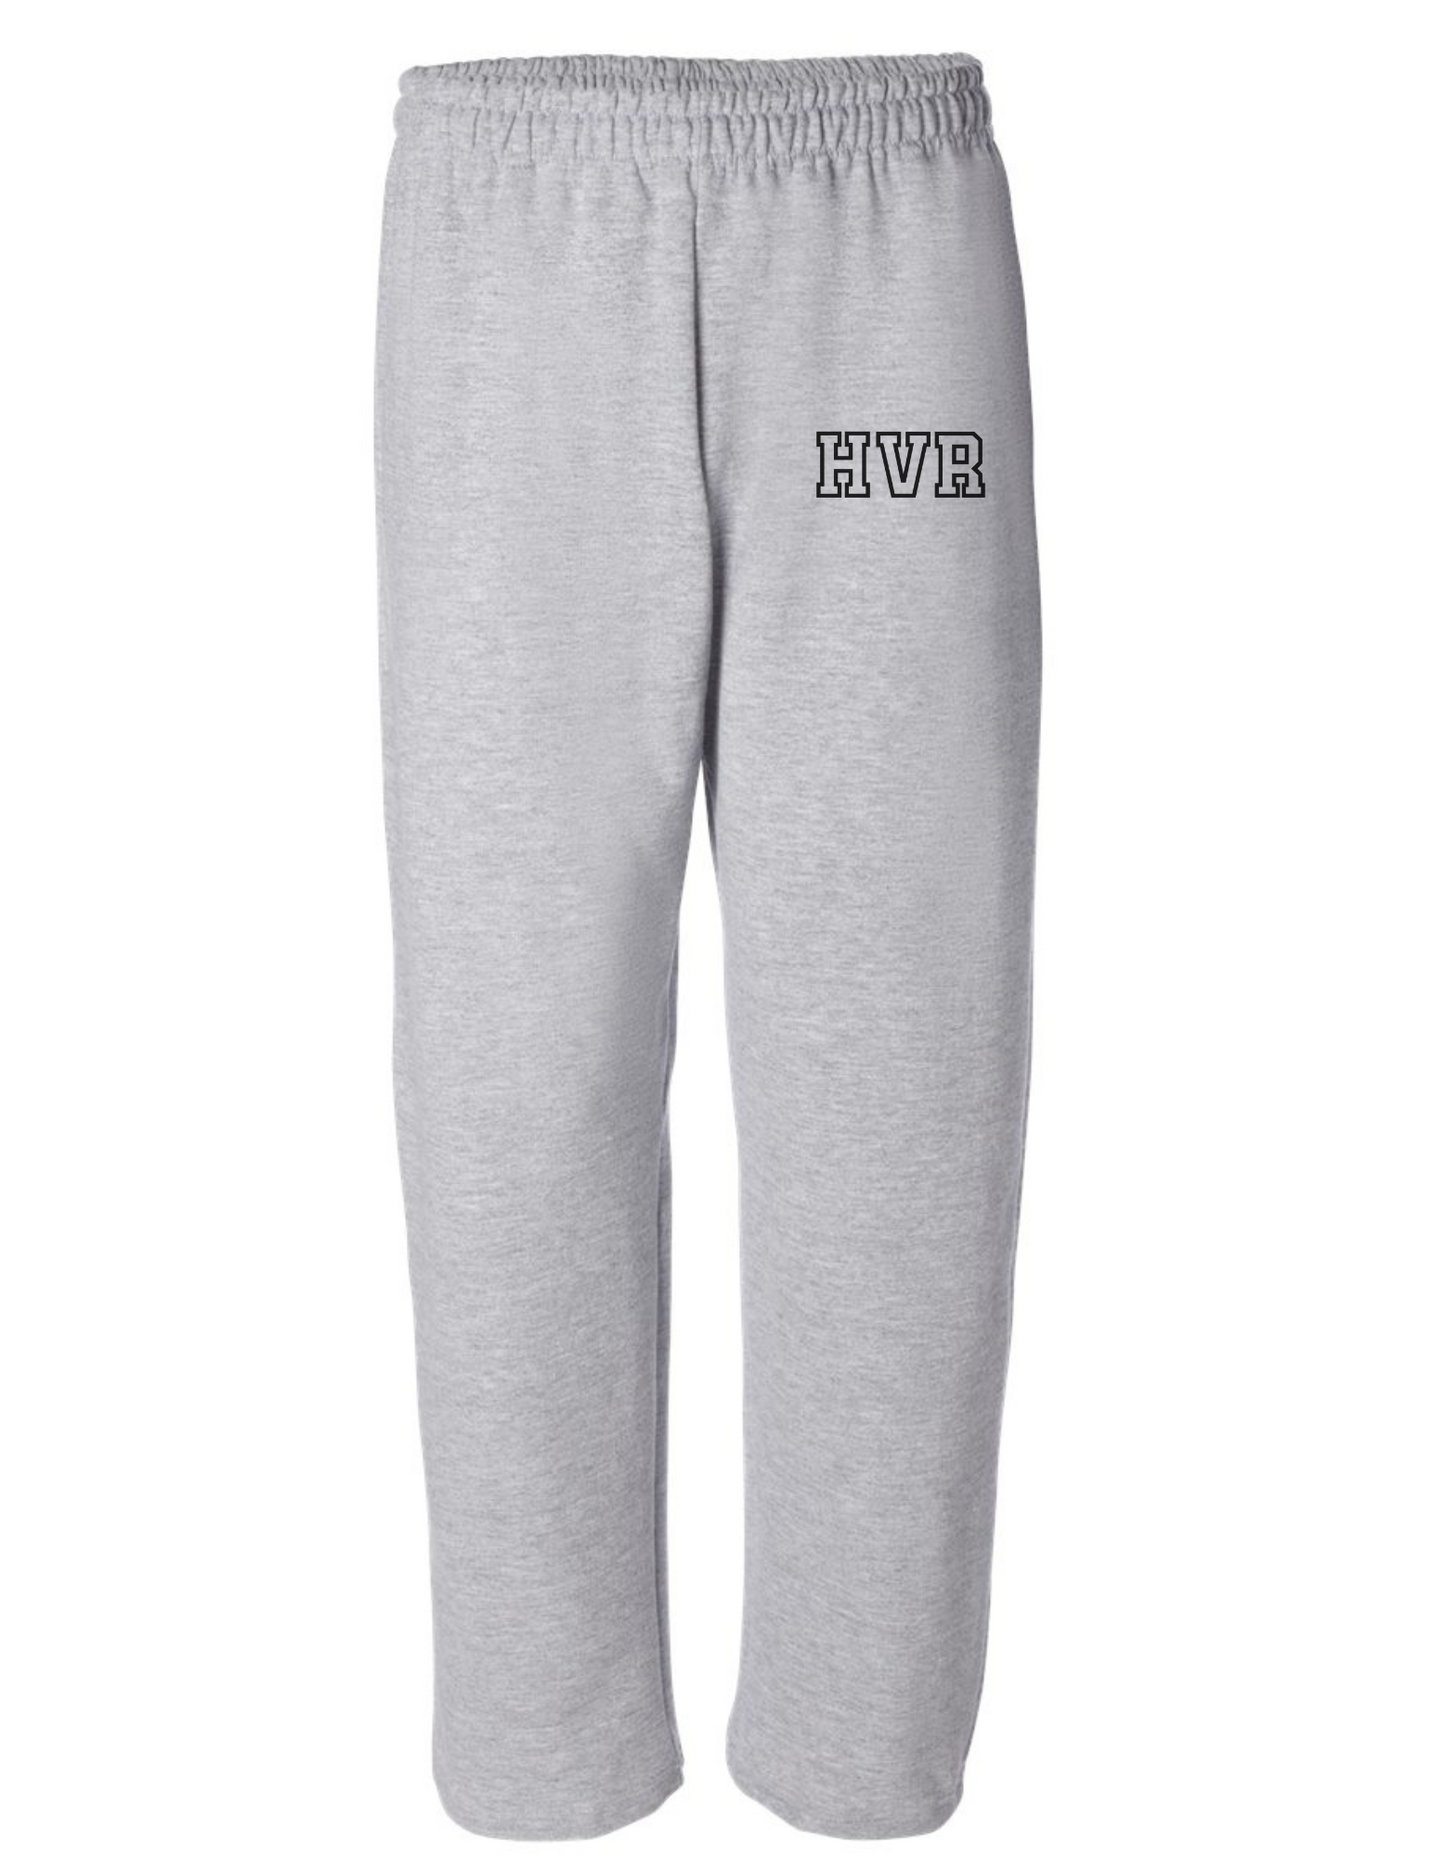 Hoover Sweatpants ADULT